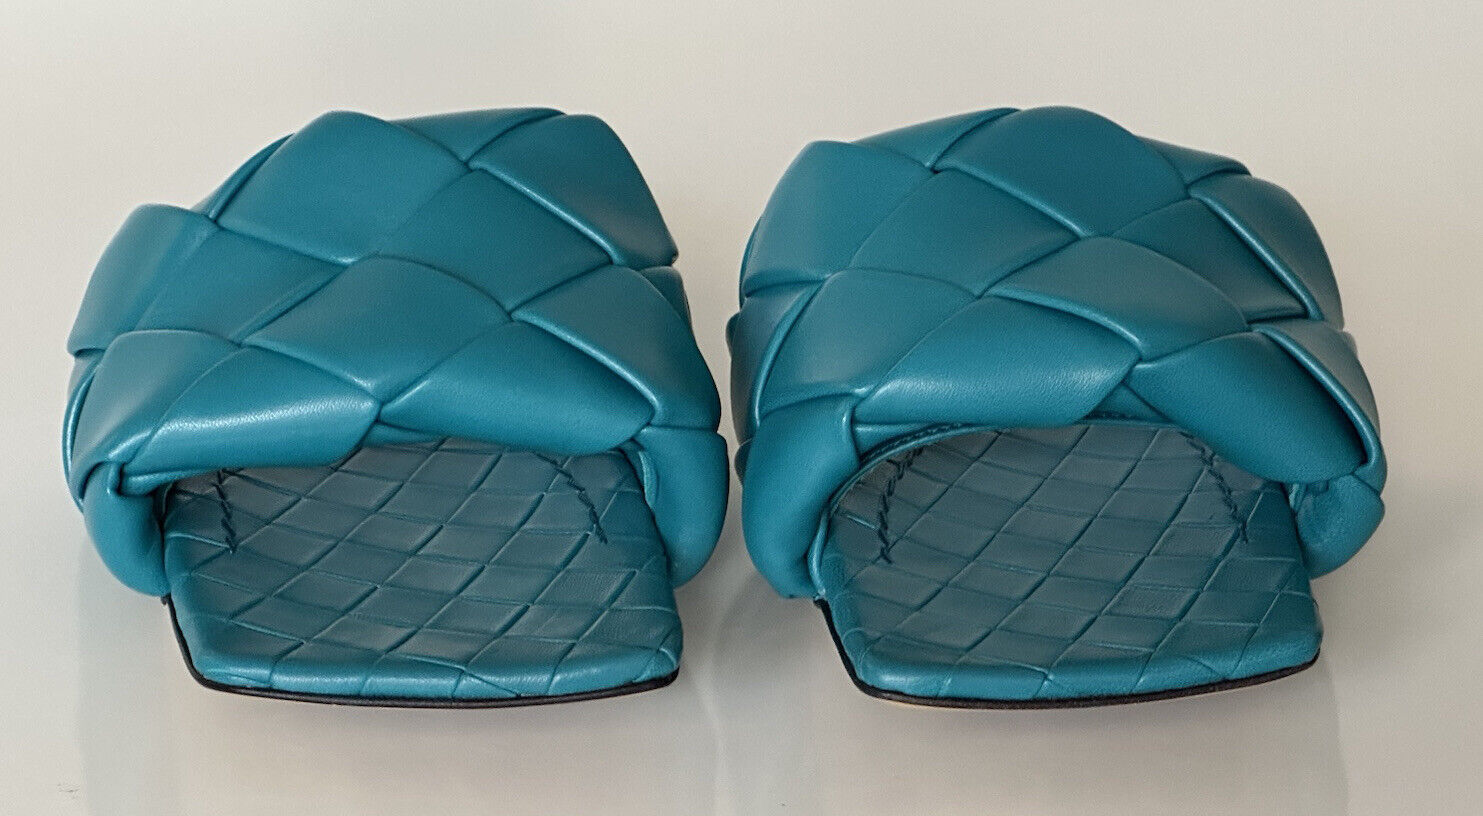 NWT $1350 Bottega Veneta Petroleum Синие сандалии на плоской подошве Туфли 8 США 608853 